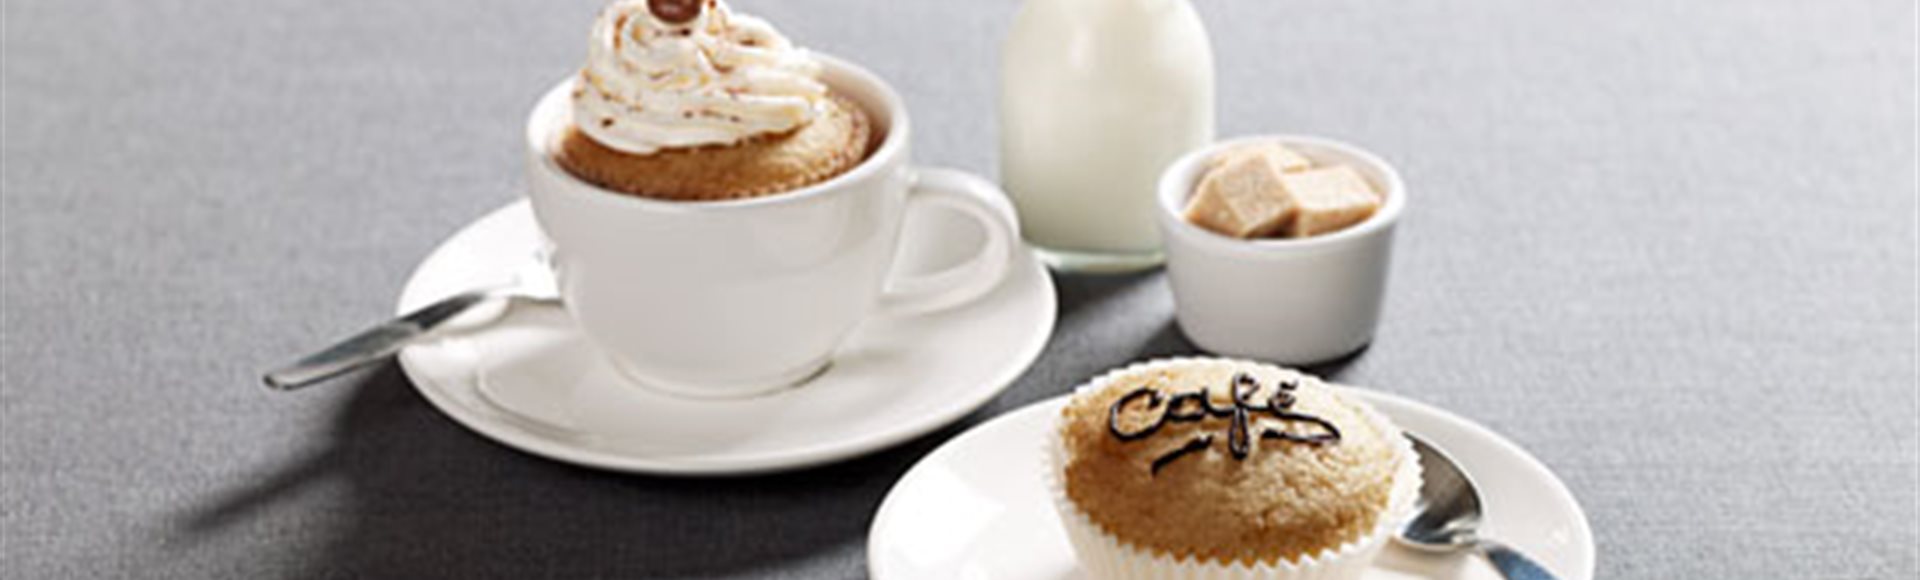 Cupcakes cappuccino et cuillères chocolat